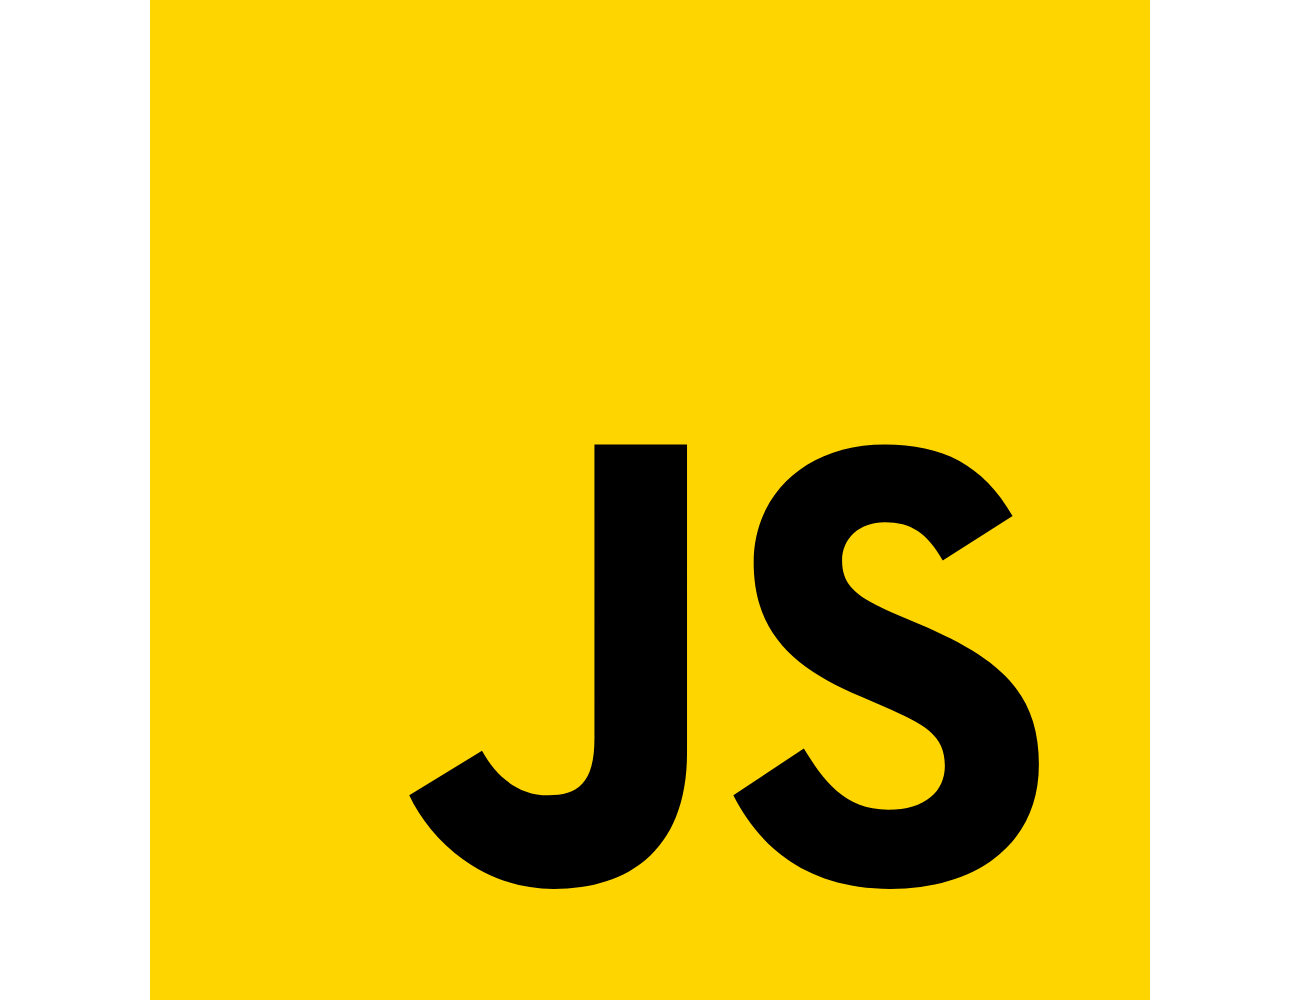 JavaScriptのロゴ